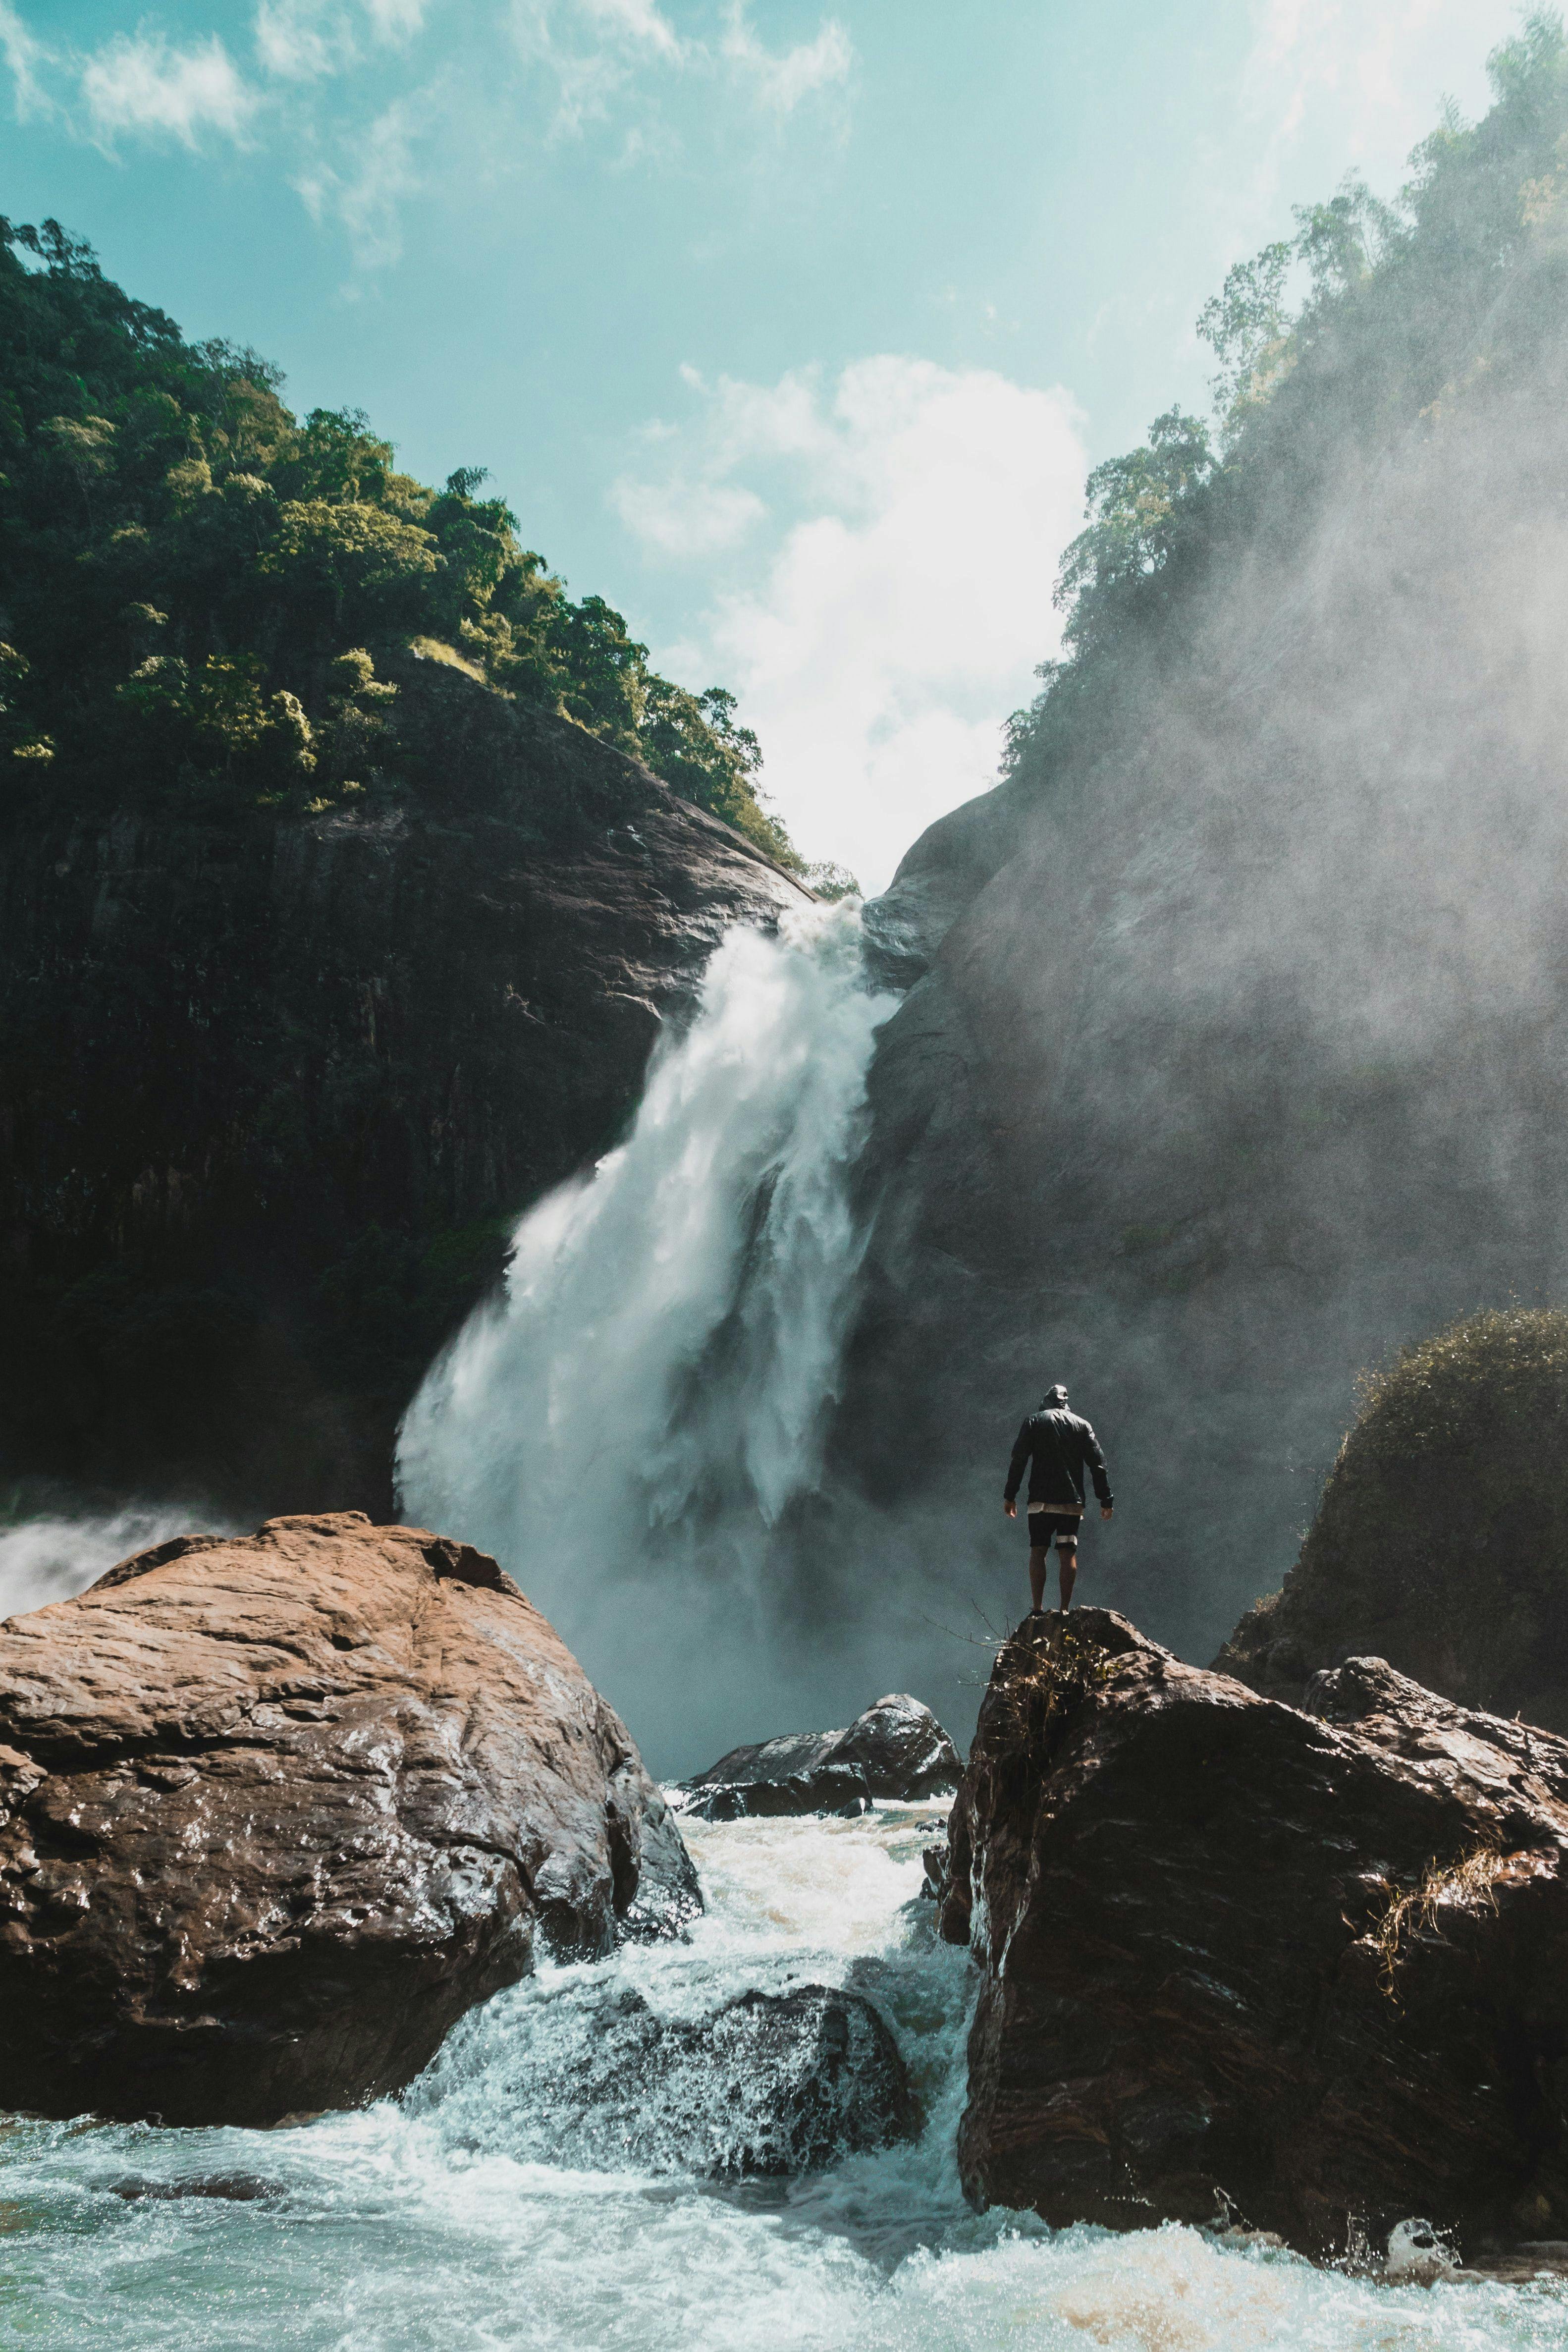 Dunhinda Falls in Sri Lanka.